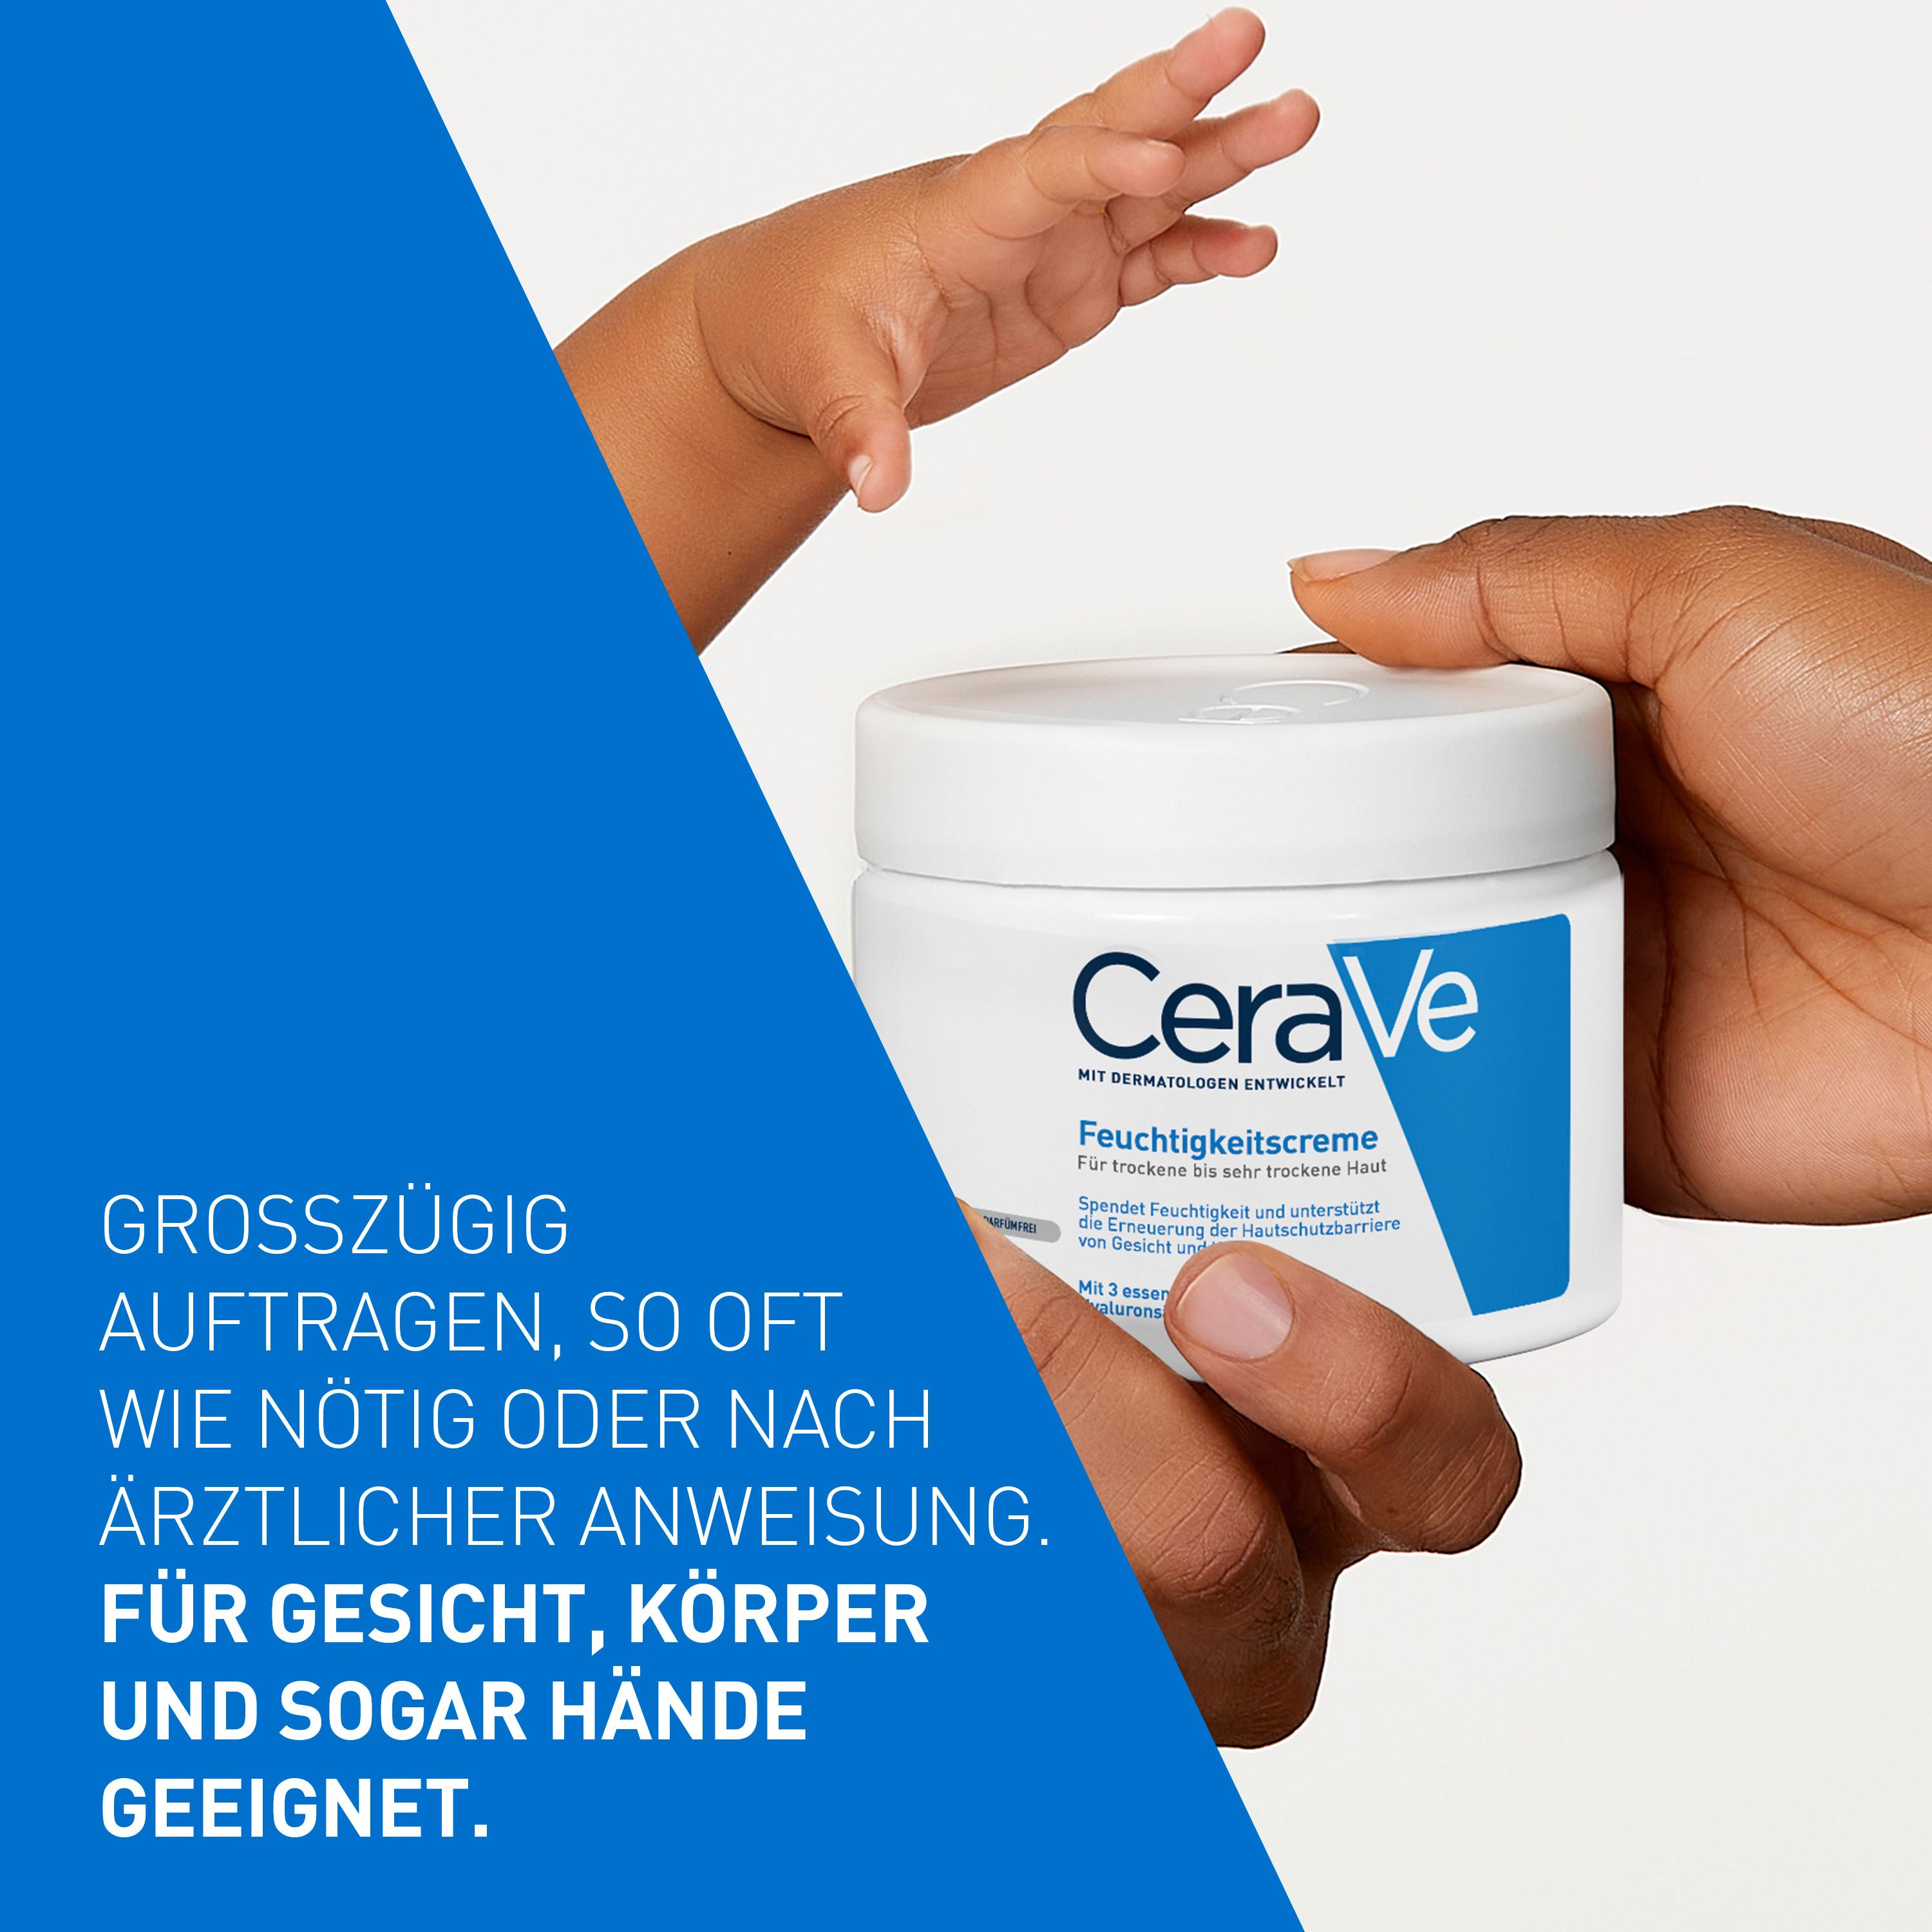 CeraVe Feuchtigkeitscreme: Reichhaltige Körpercreme für trockene bis sehr trockene Haut für Gesicht und Körper